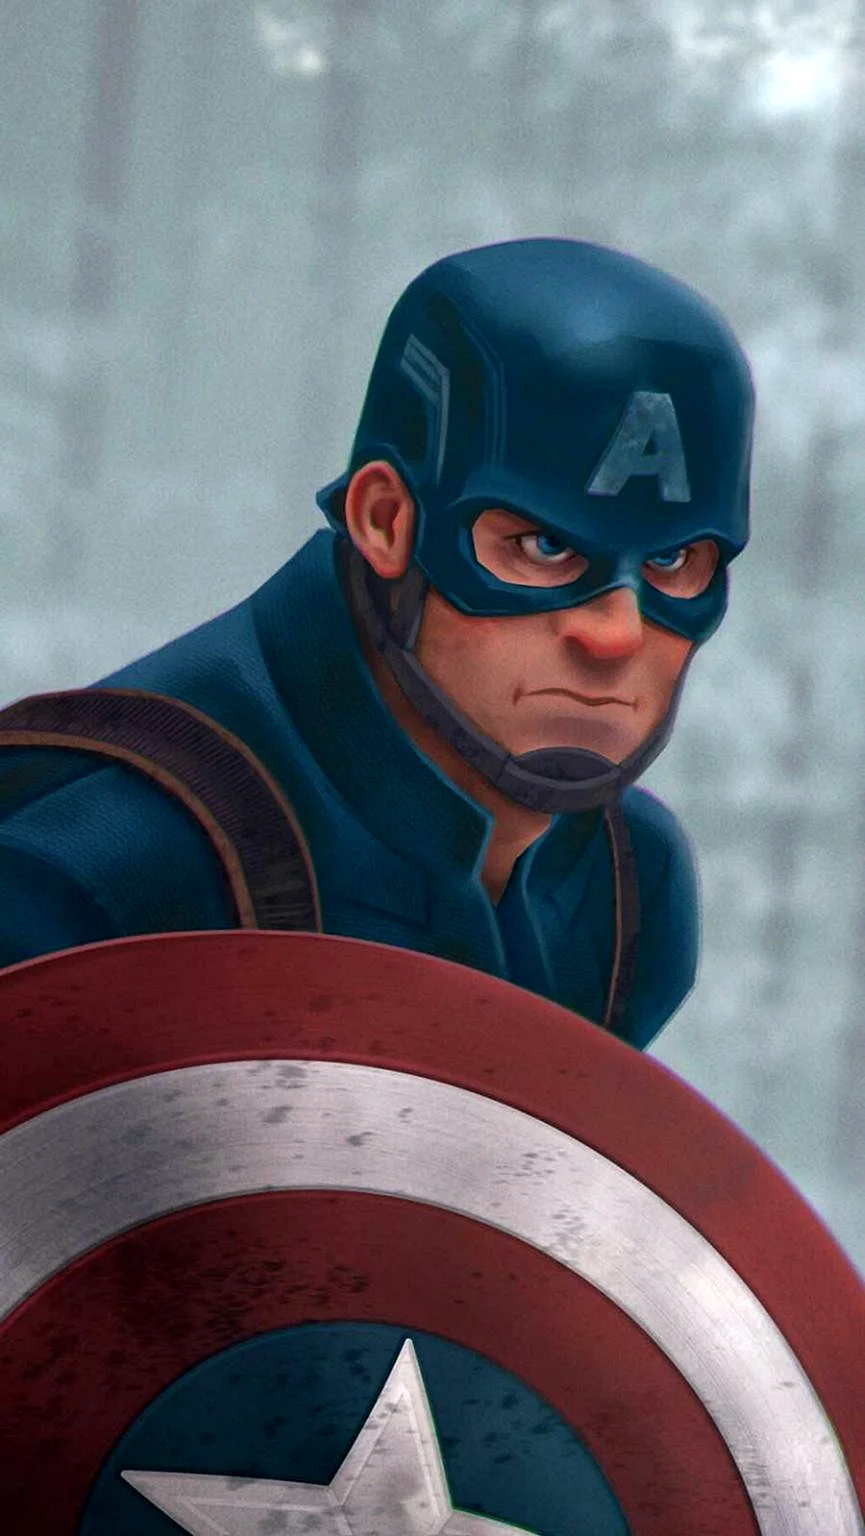 Baca Komik Captain America Wallpaper For iPhone